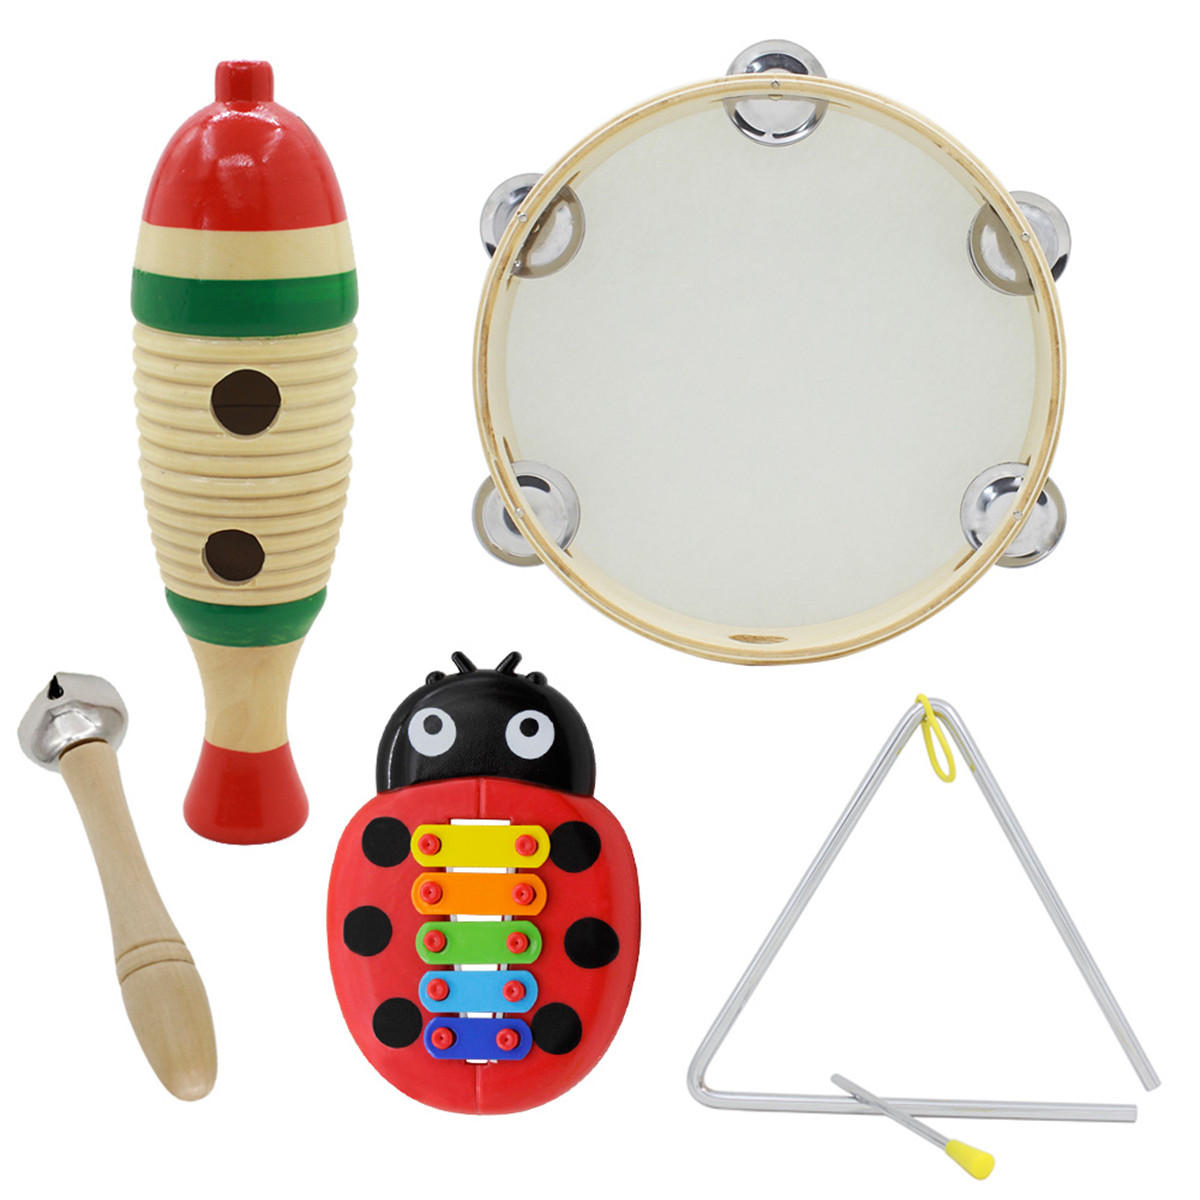 5-delige set orff muziekinstrumenten viskikker / hand tamboerijn / enkele bar bel / muziek driehoek 